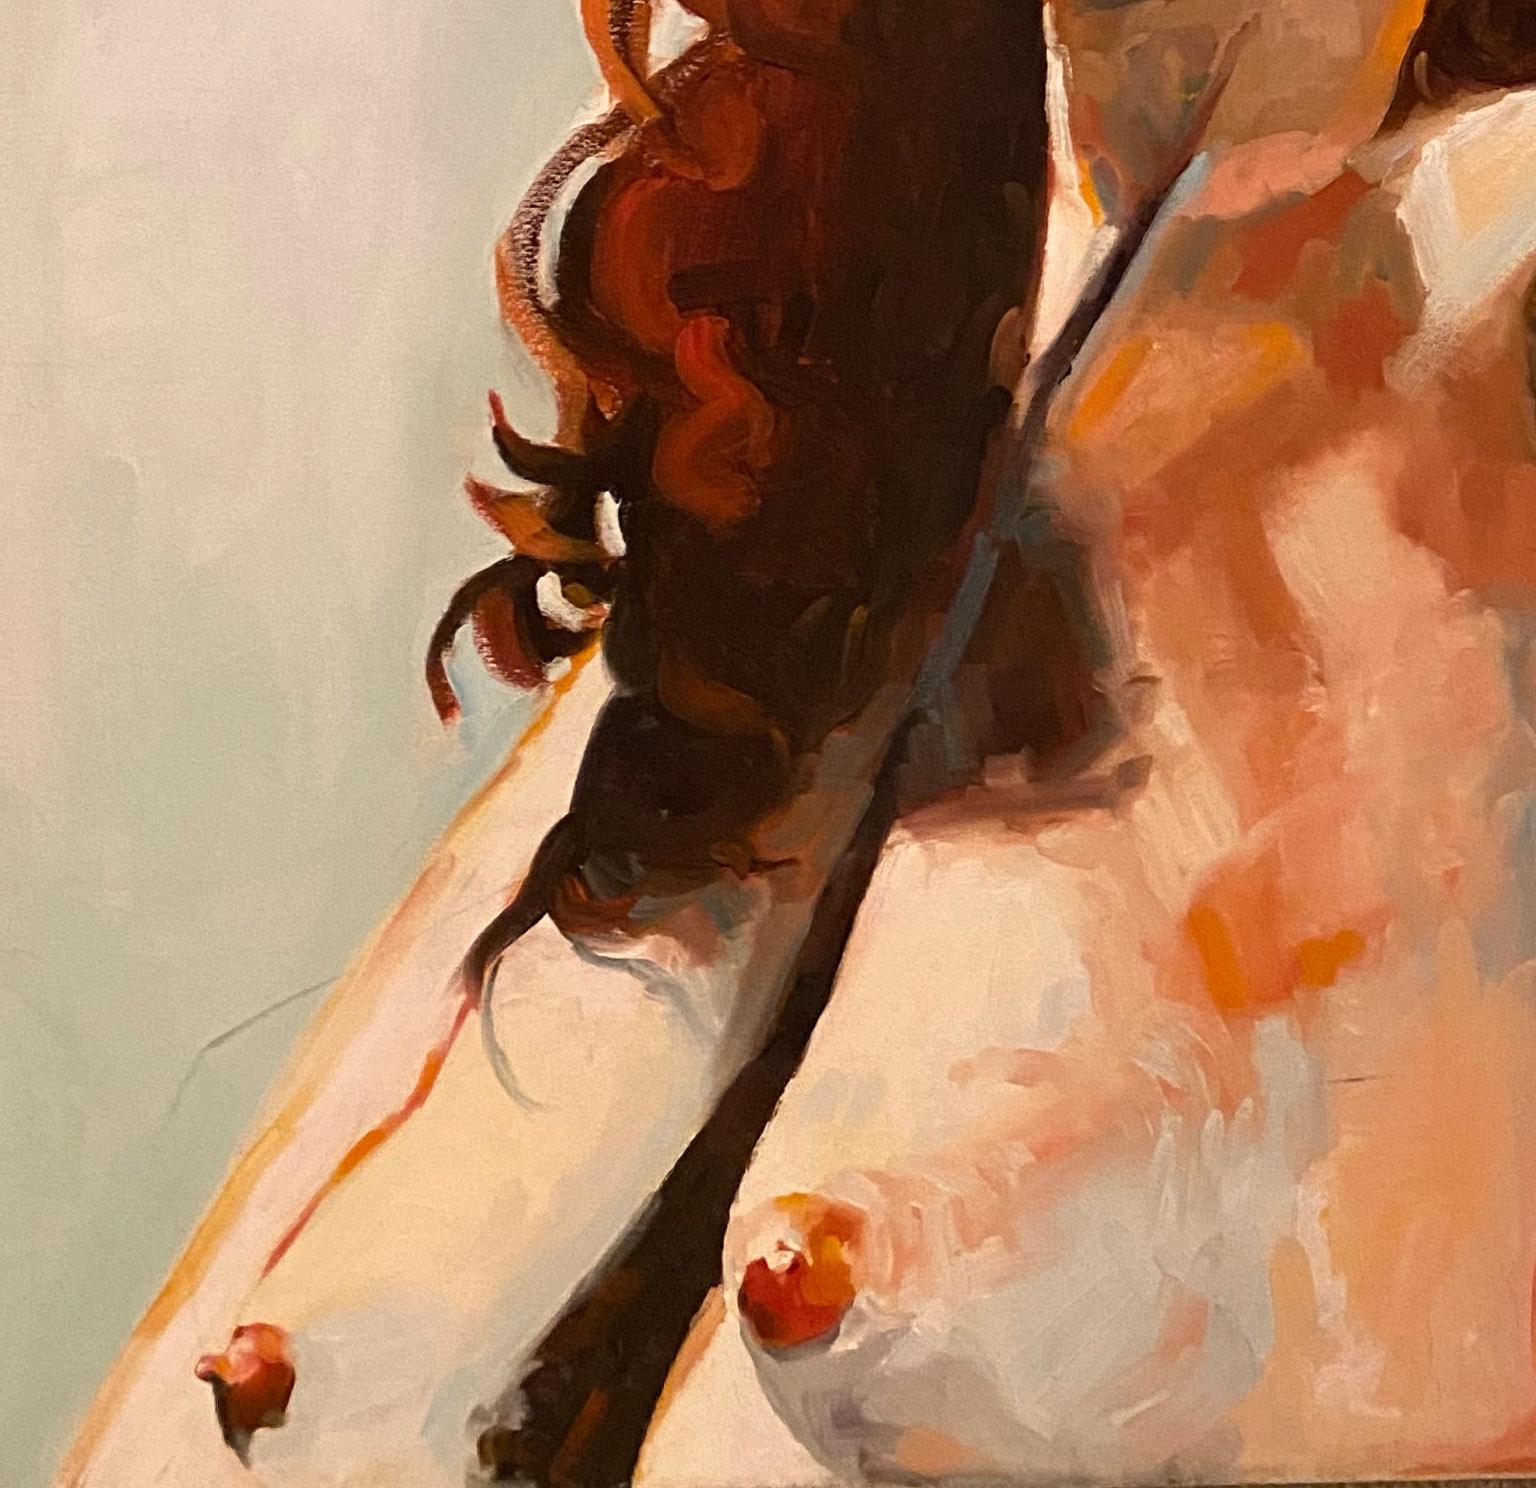 Frau mit braunem Haar'  Weiblicher Akt Modell Figurative Kunst  Porträt  von Shana  (Beige), Nude Painting, von Shana Wilson